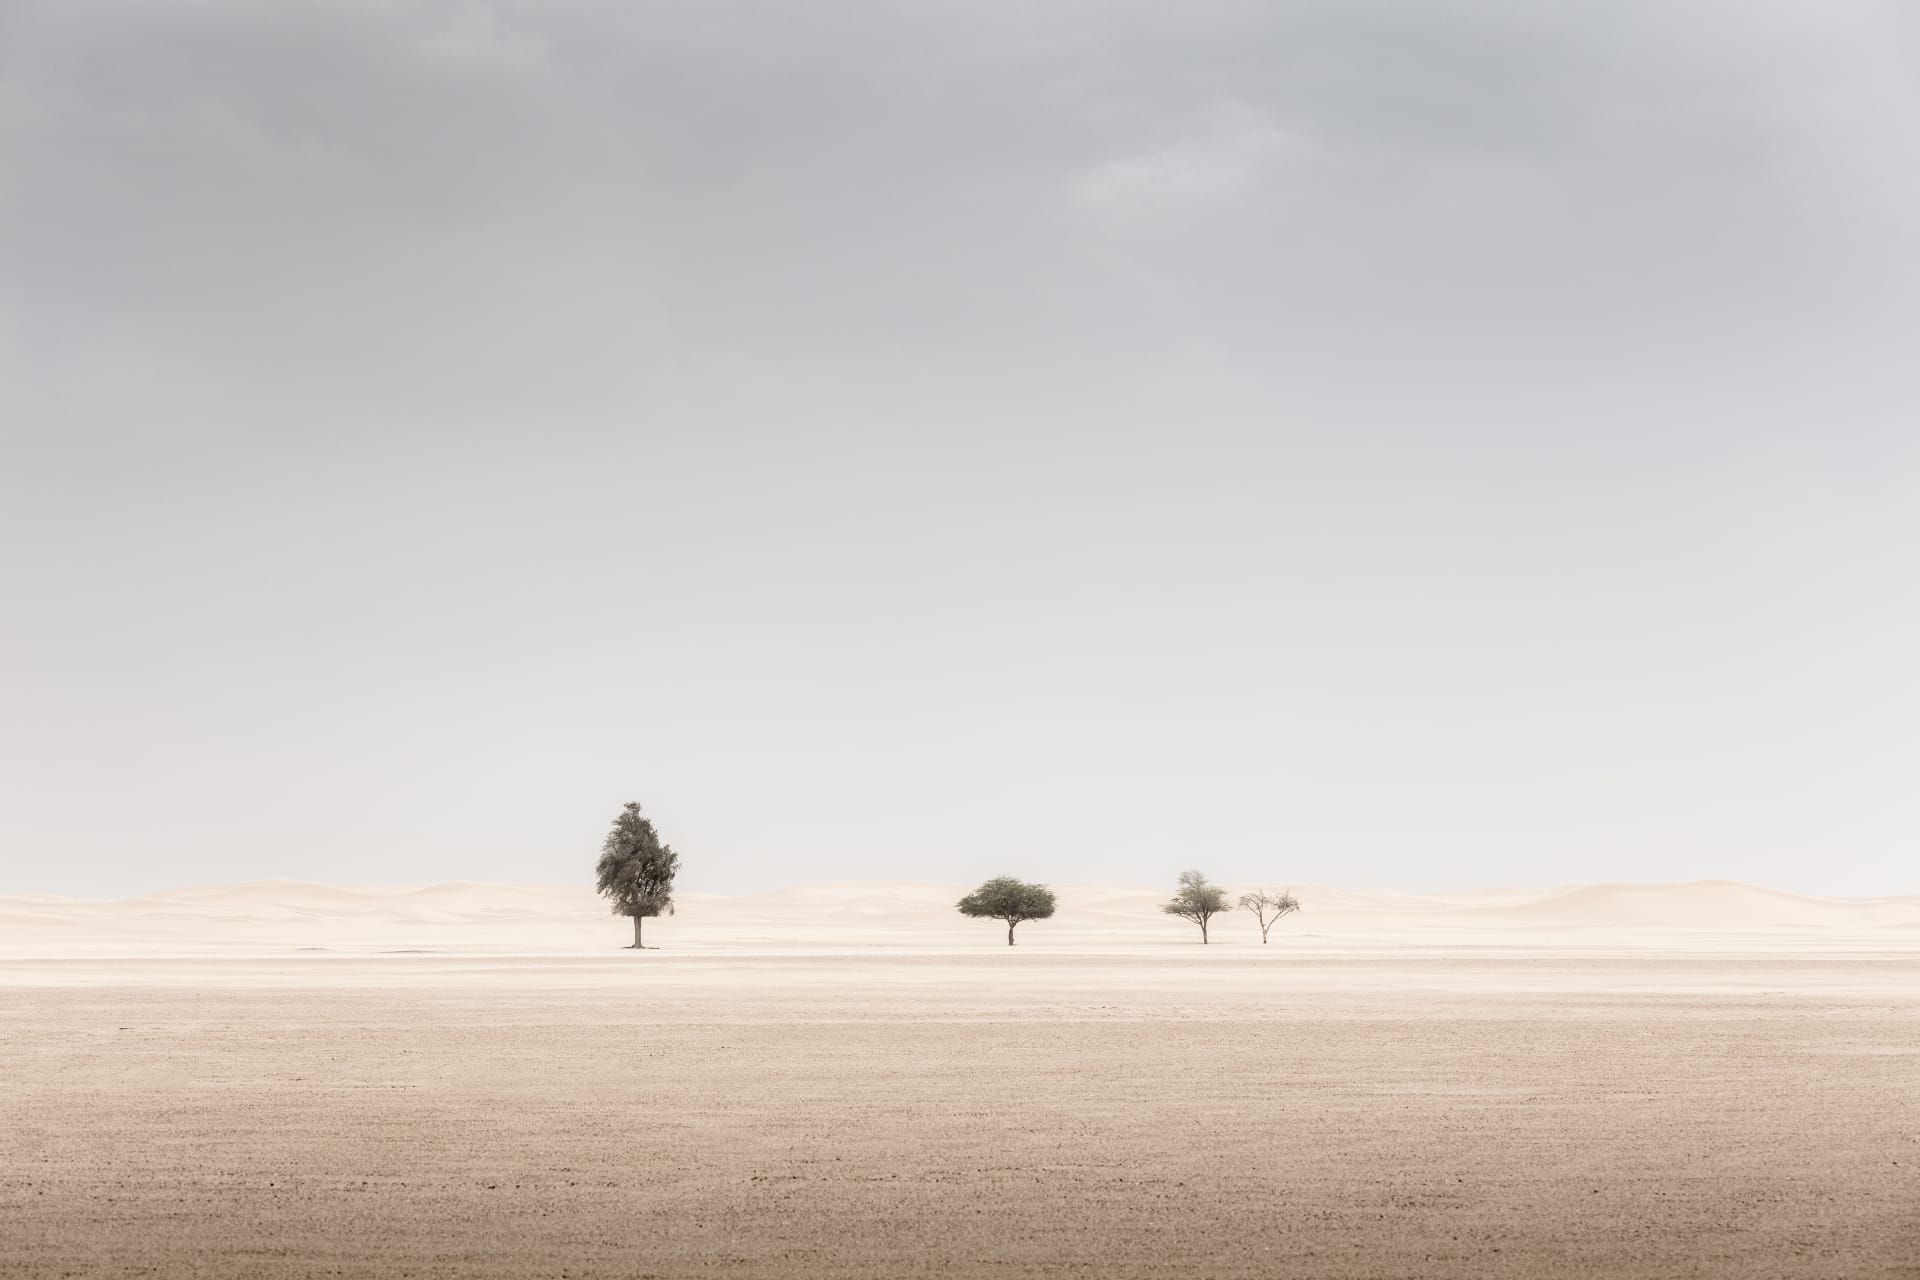 ظروف "لا ترحم".. مصور يروي تجربته وسط عاصفة ترابية بصحراء الإمارات سعيا لهذه الصور الساحرة